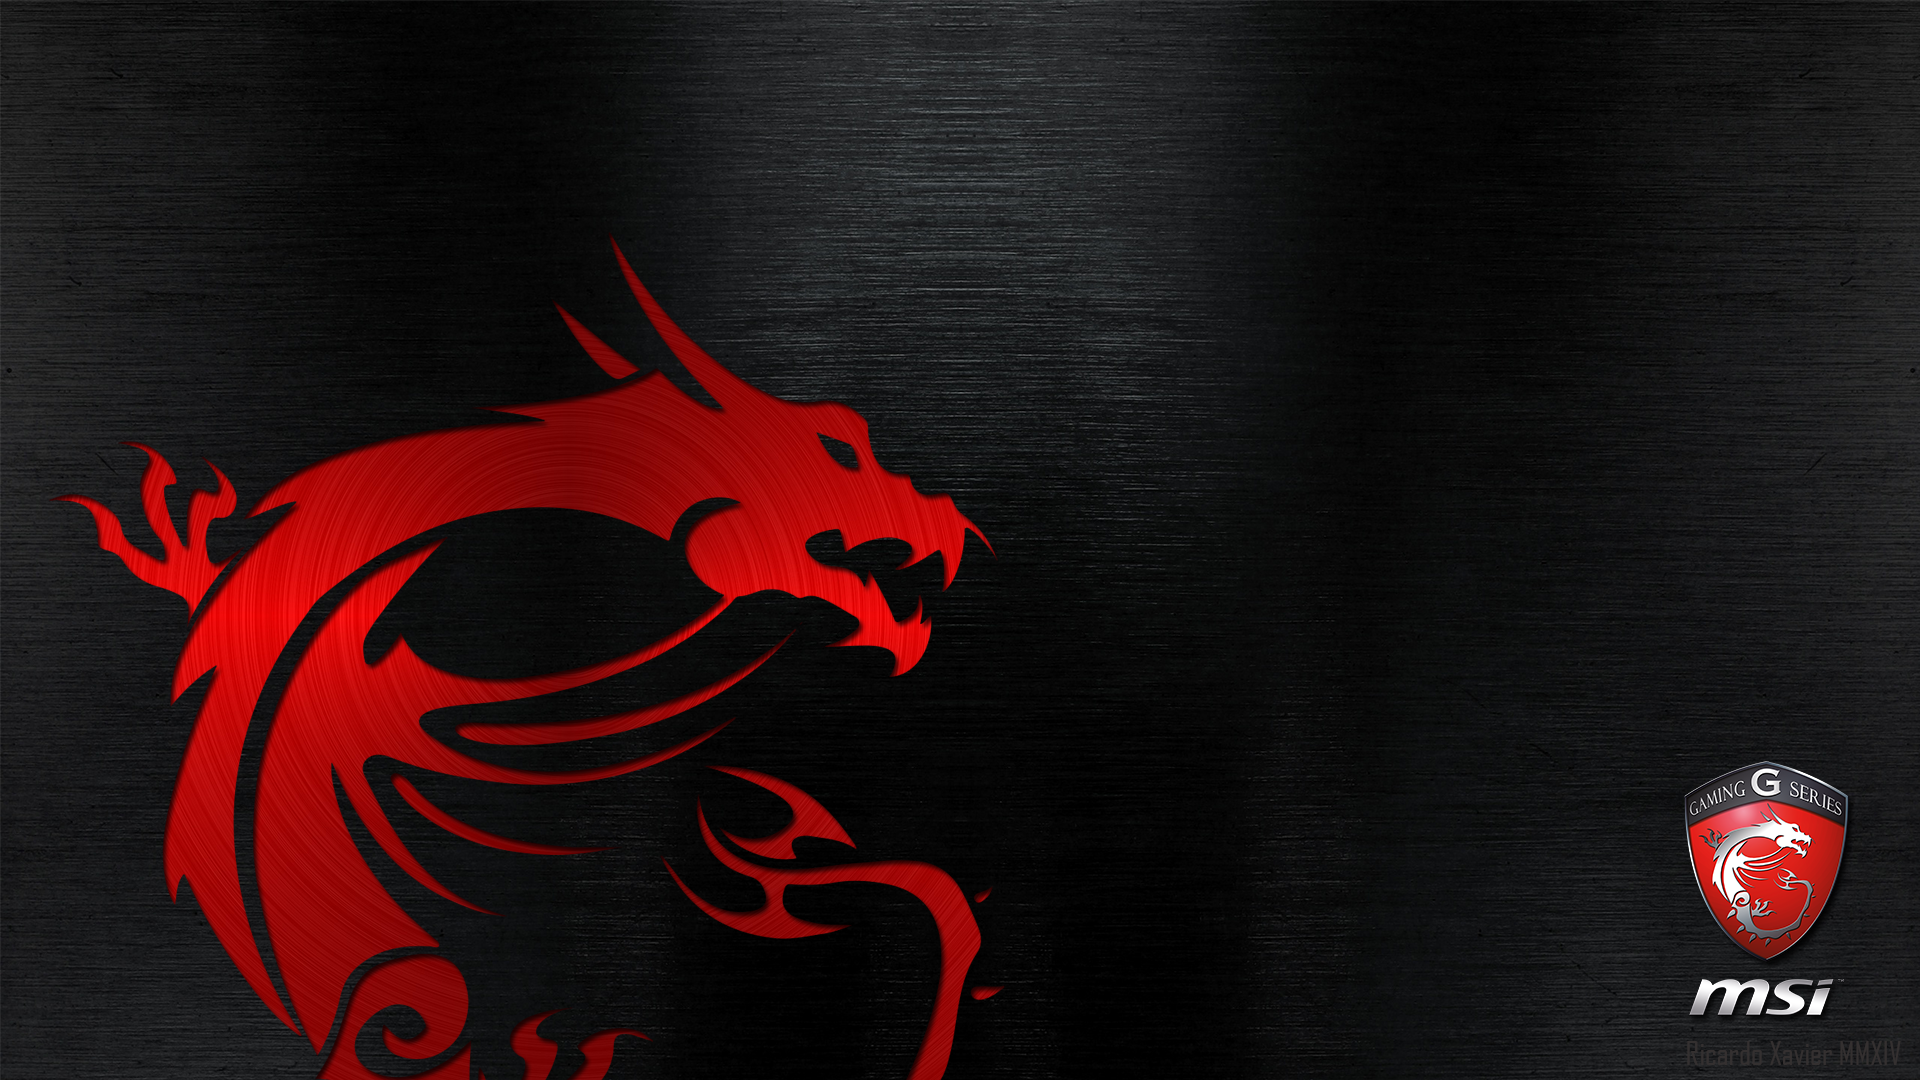 MSI Gaming Wallpaper   red dragon emobossed 19201080 MSI 1920x1080